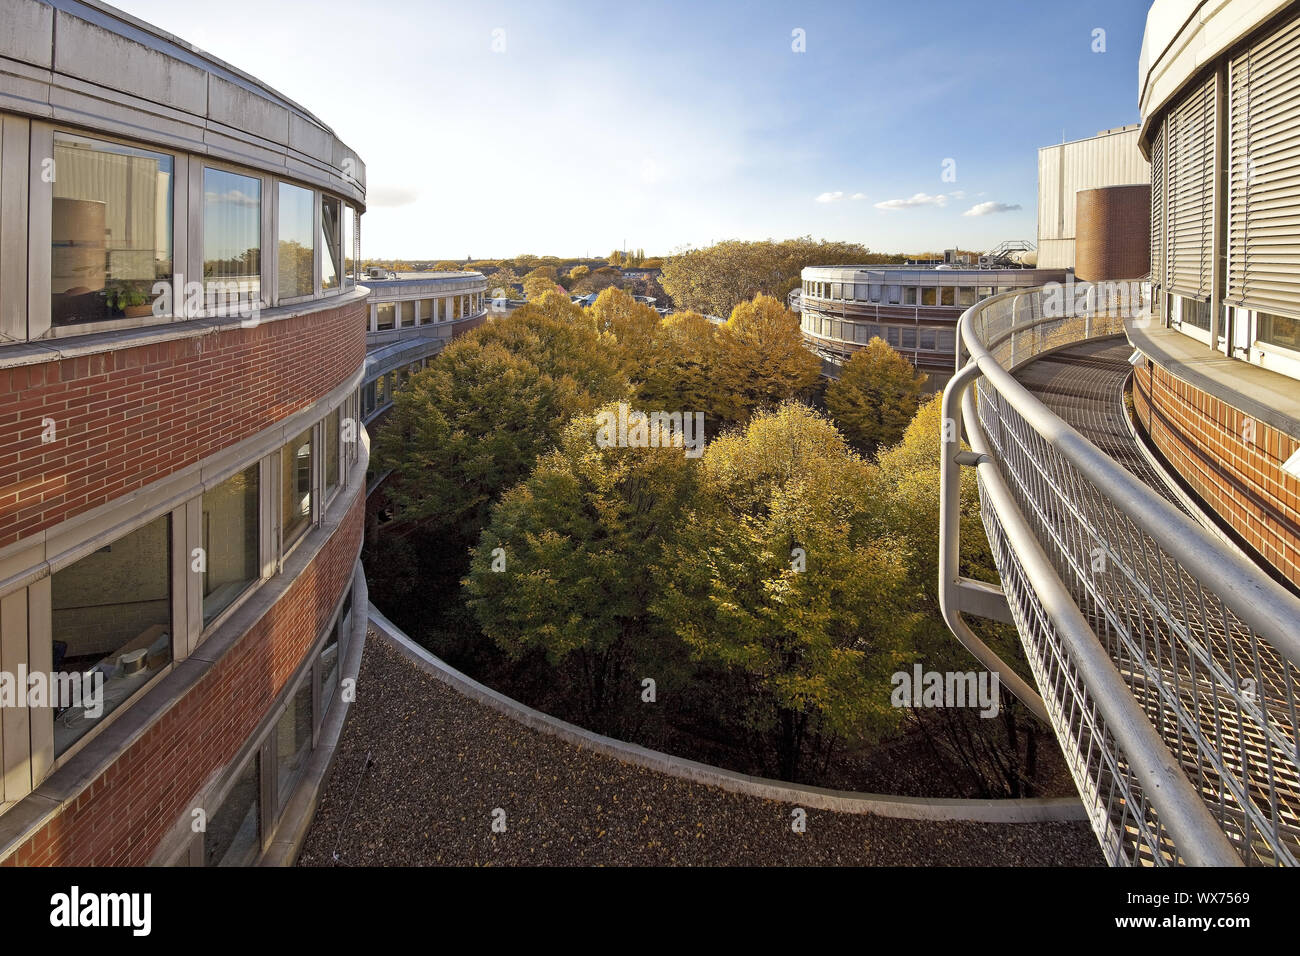 Universität Duisburg-Essen, Campus Duisburg, Cookie jars, Duisburg, Ruhrgebiet, Deutschland, Europa Stockfoto